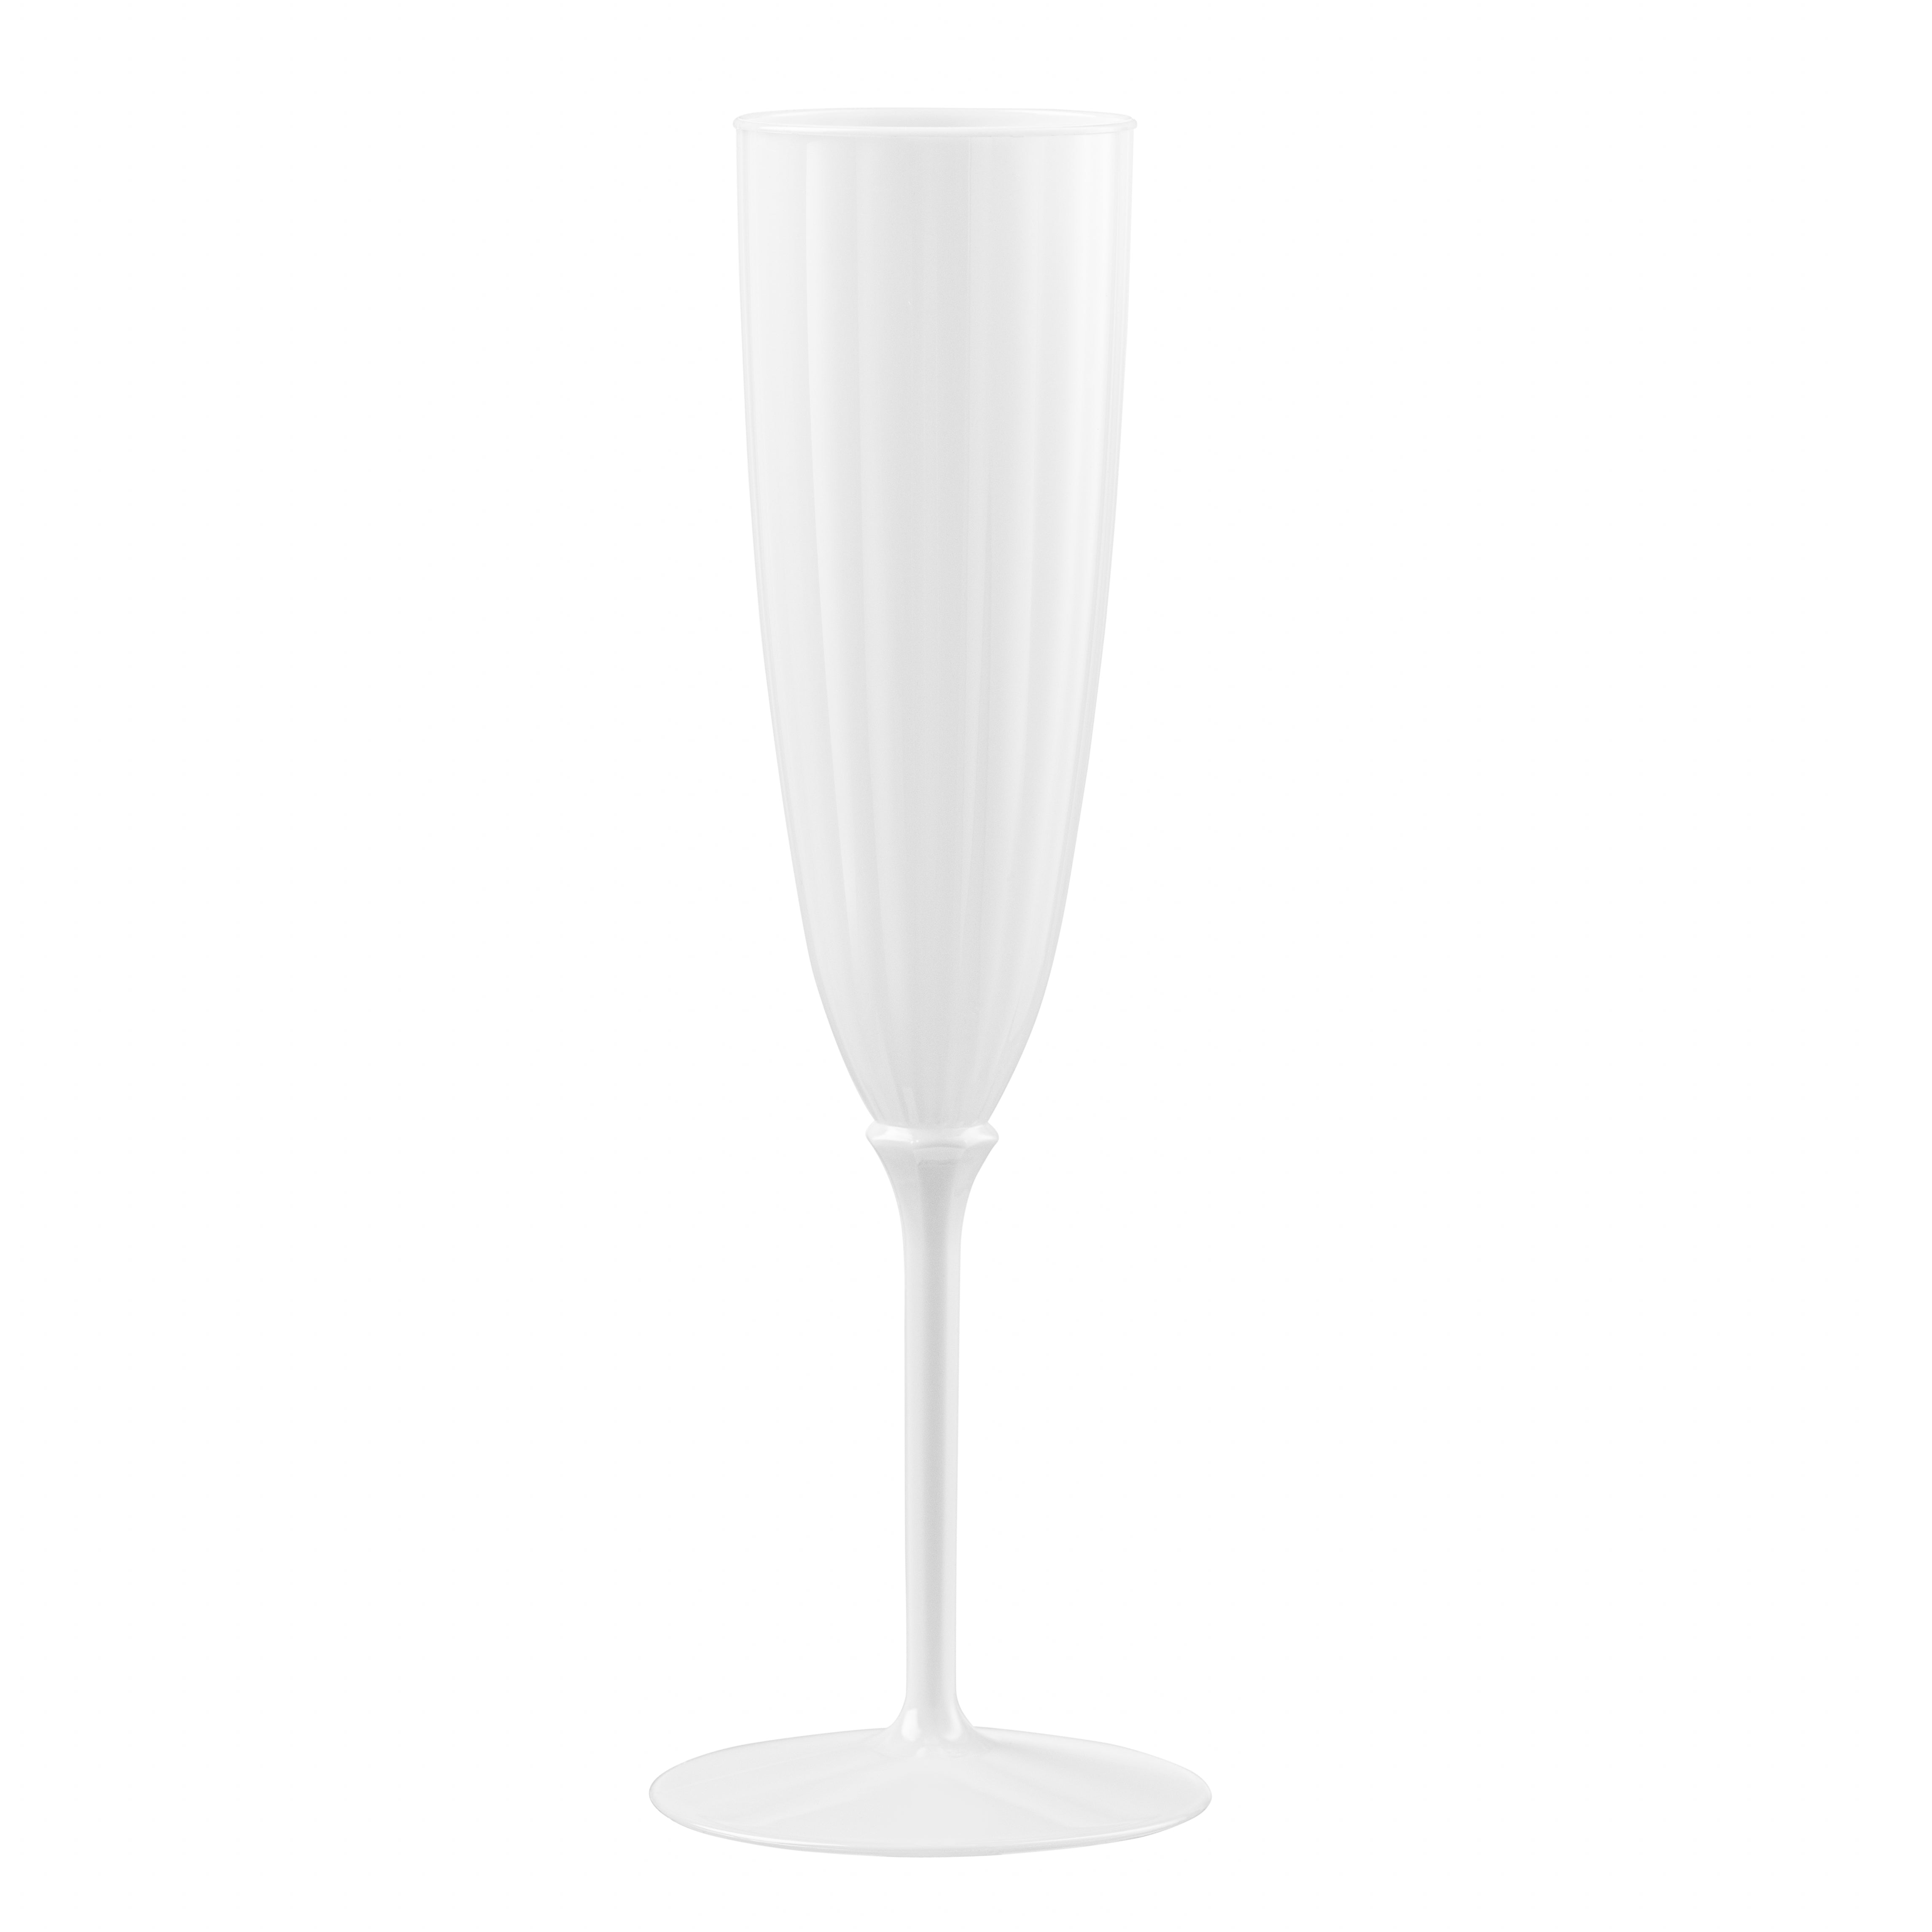 https://poshsetting.com/cdn/shop/files/whitedisposablechampagneglass.jpg?v=1701890451